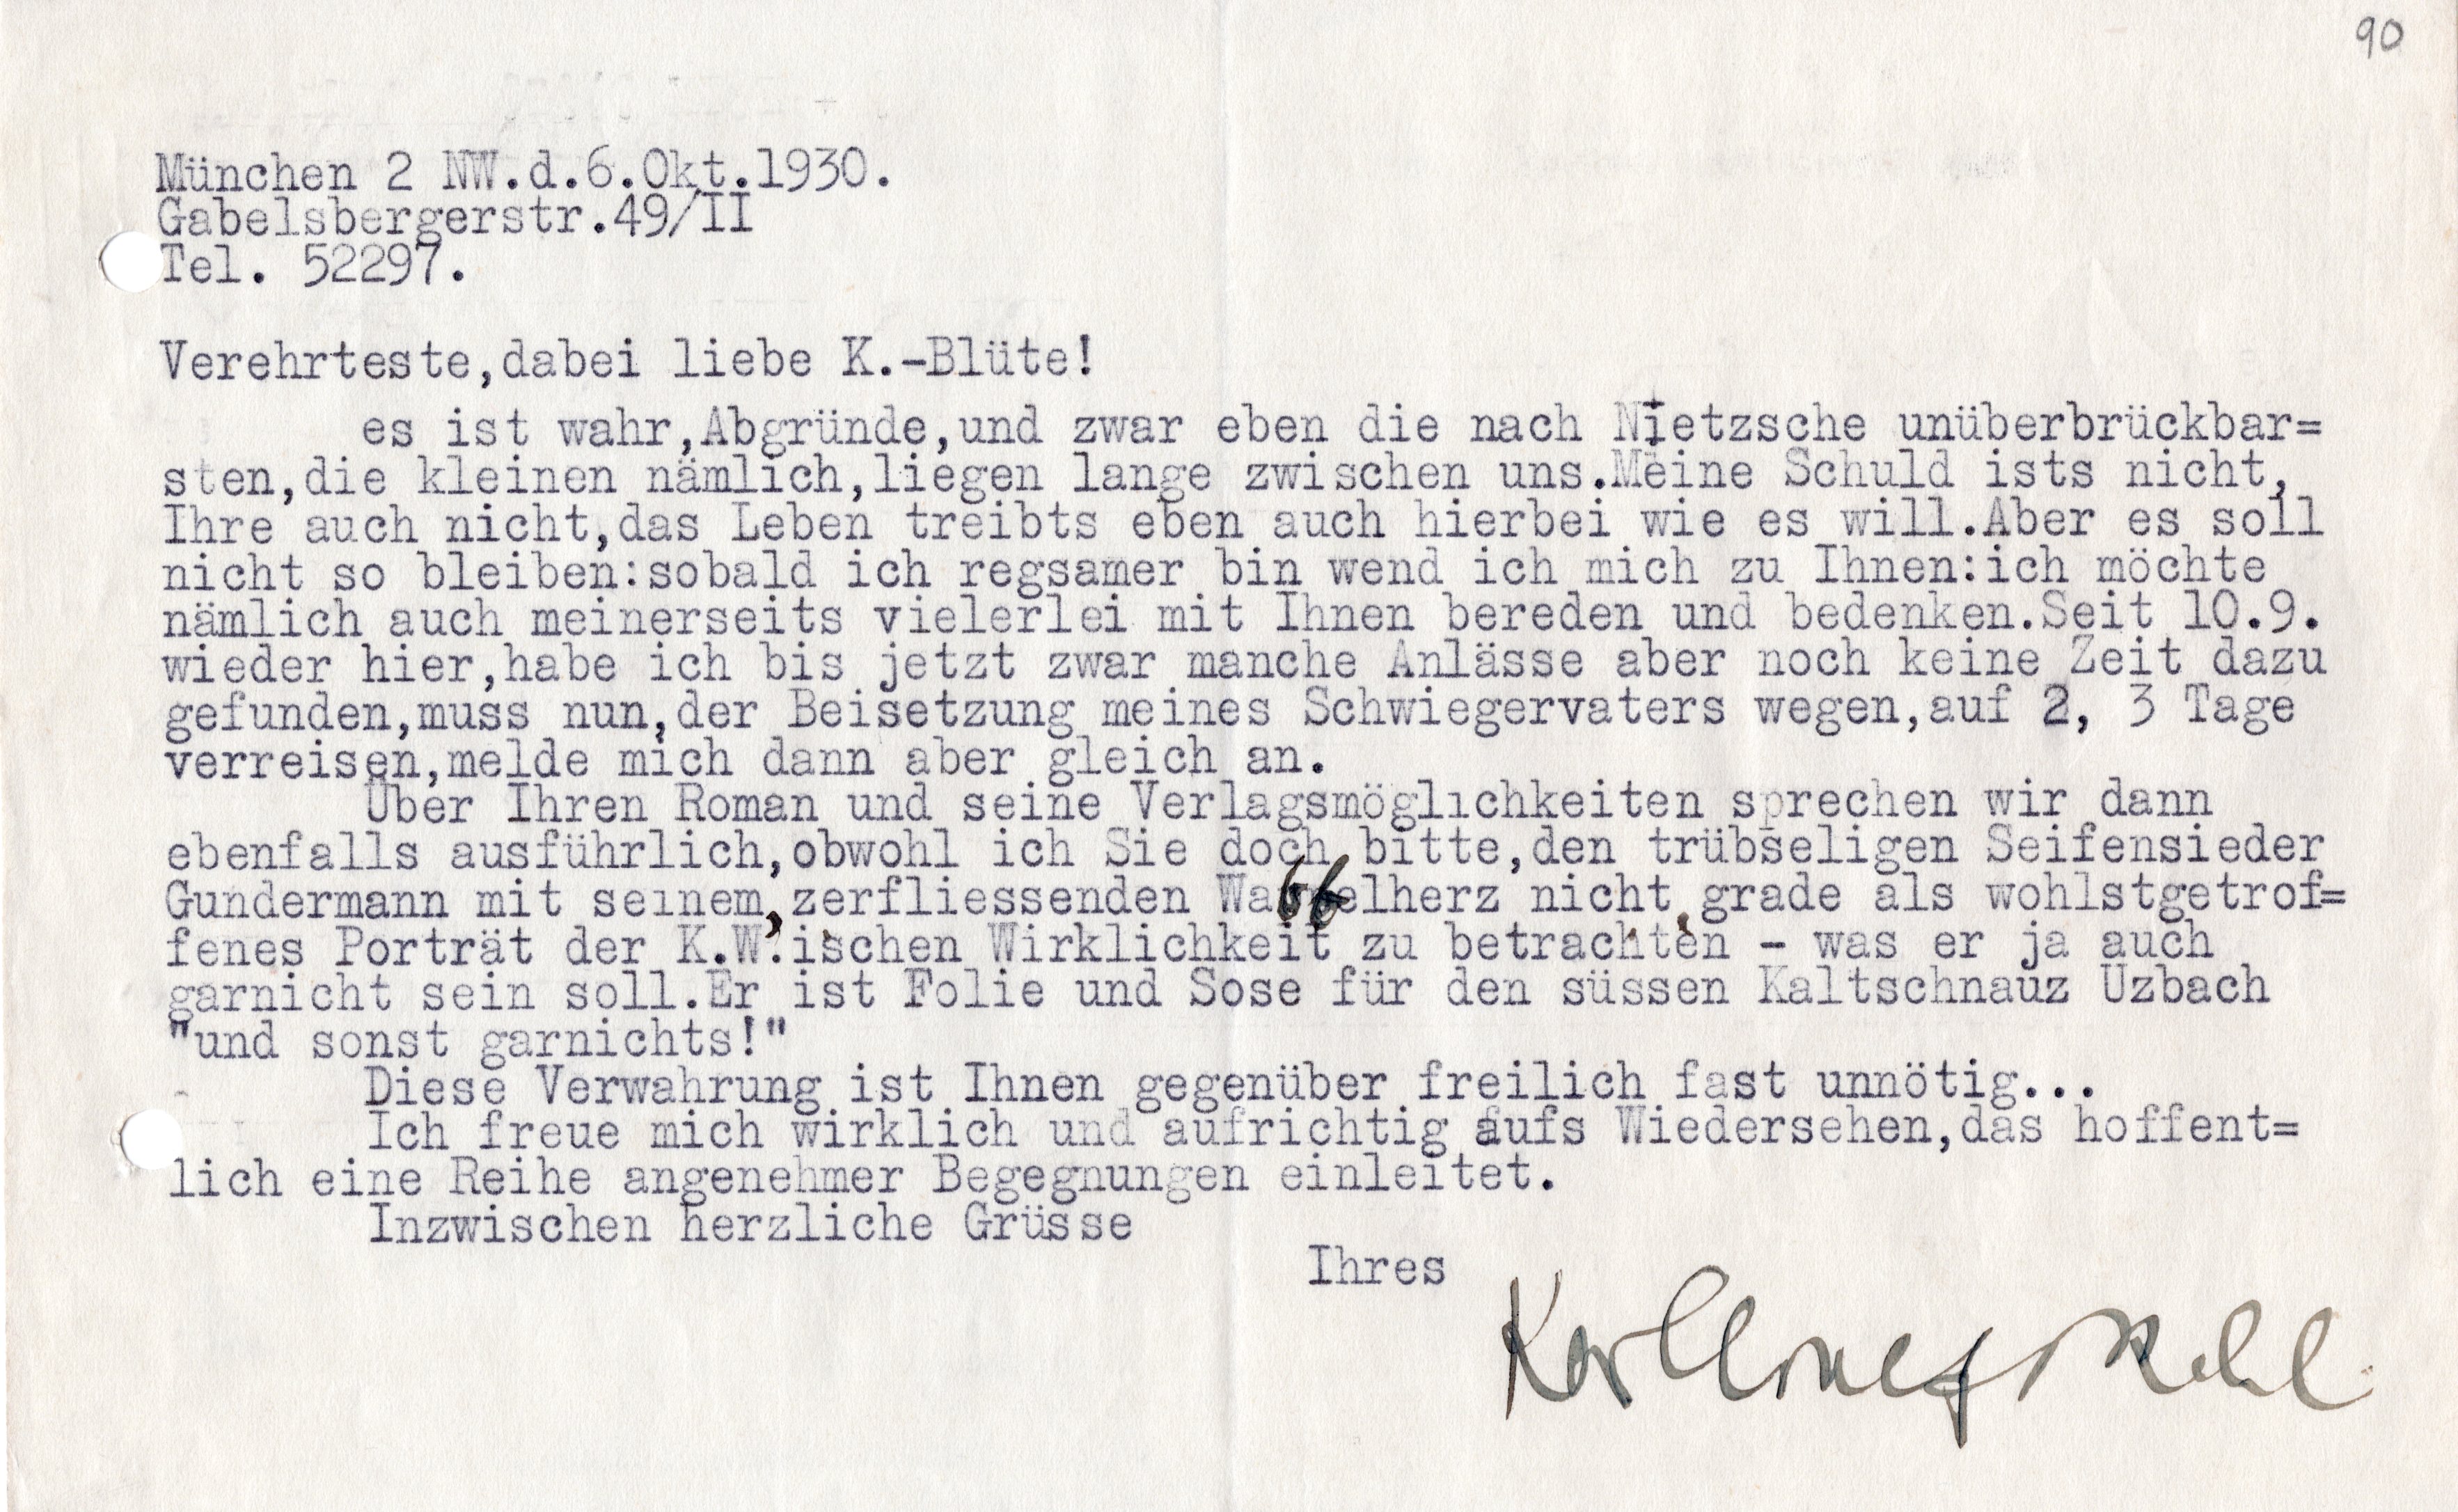 Schreiben von Karl Wolfskehl an Gerda Walther vom 6.10.1930 (Archiv des IGPP, 10/6_24)